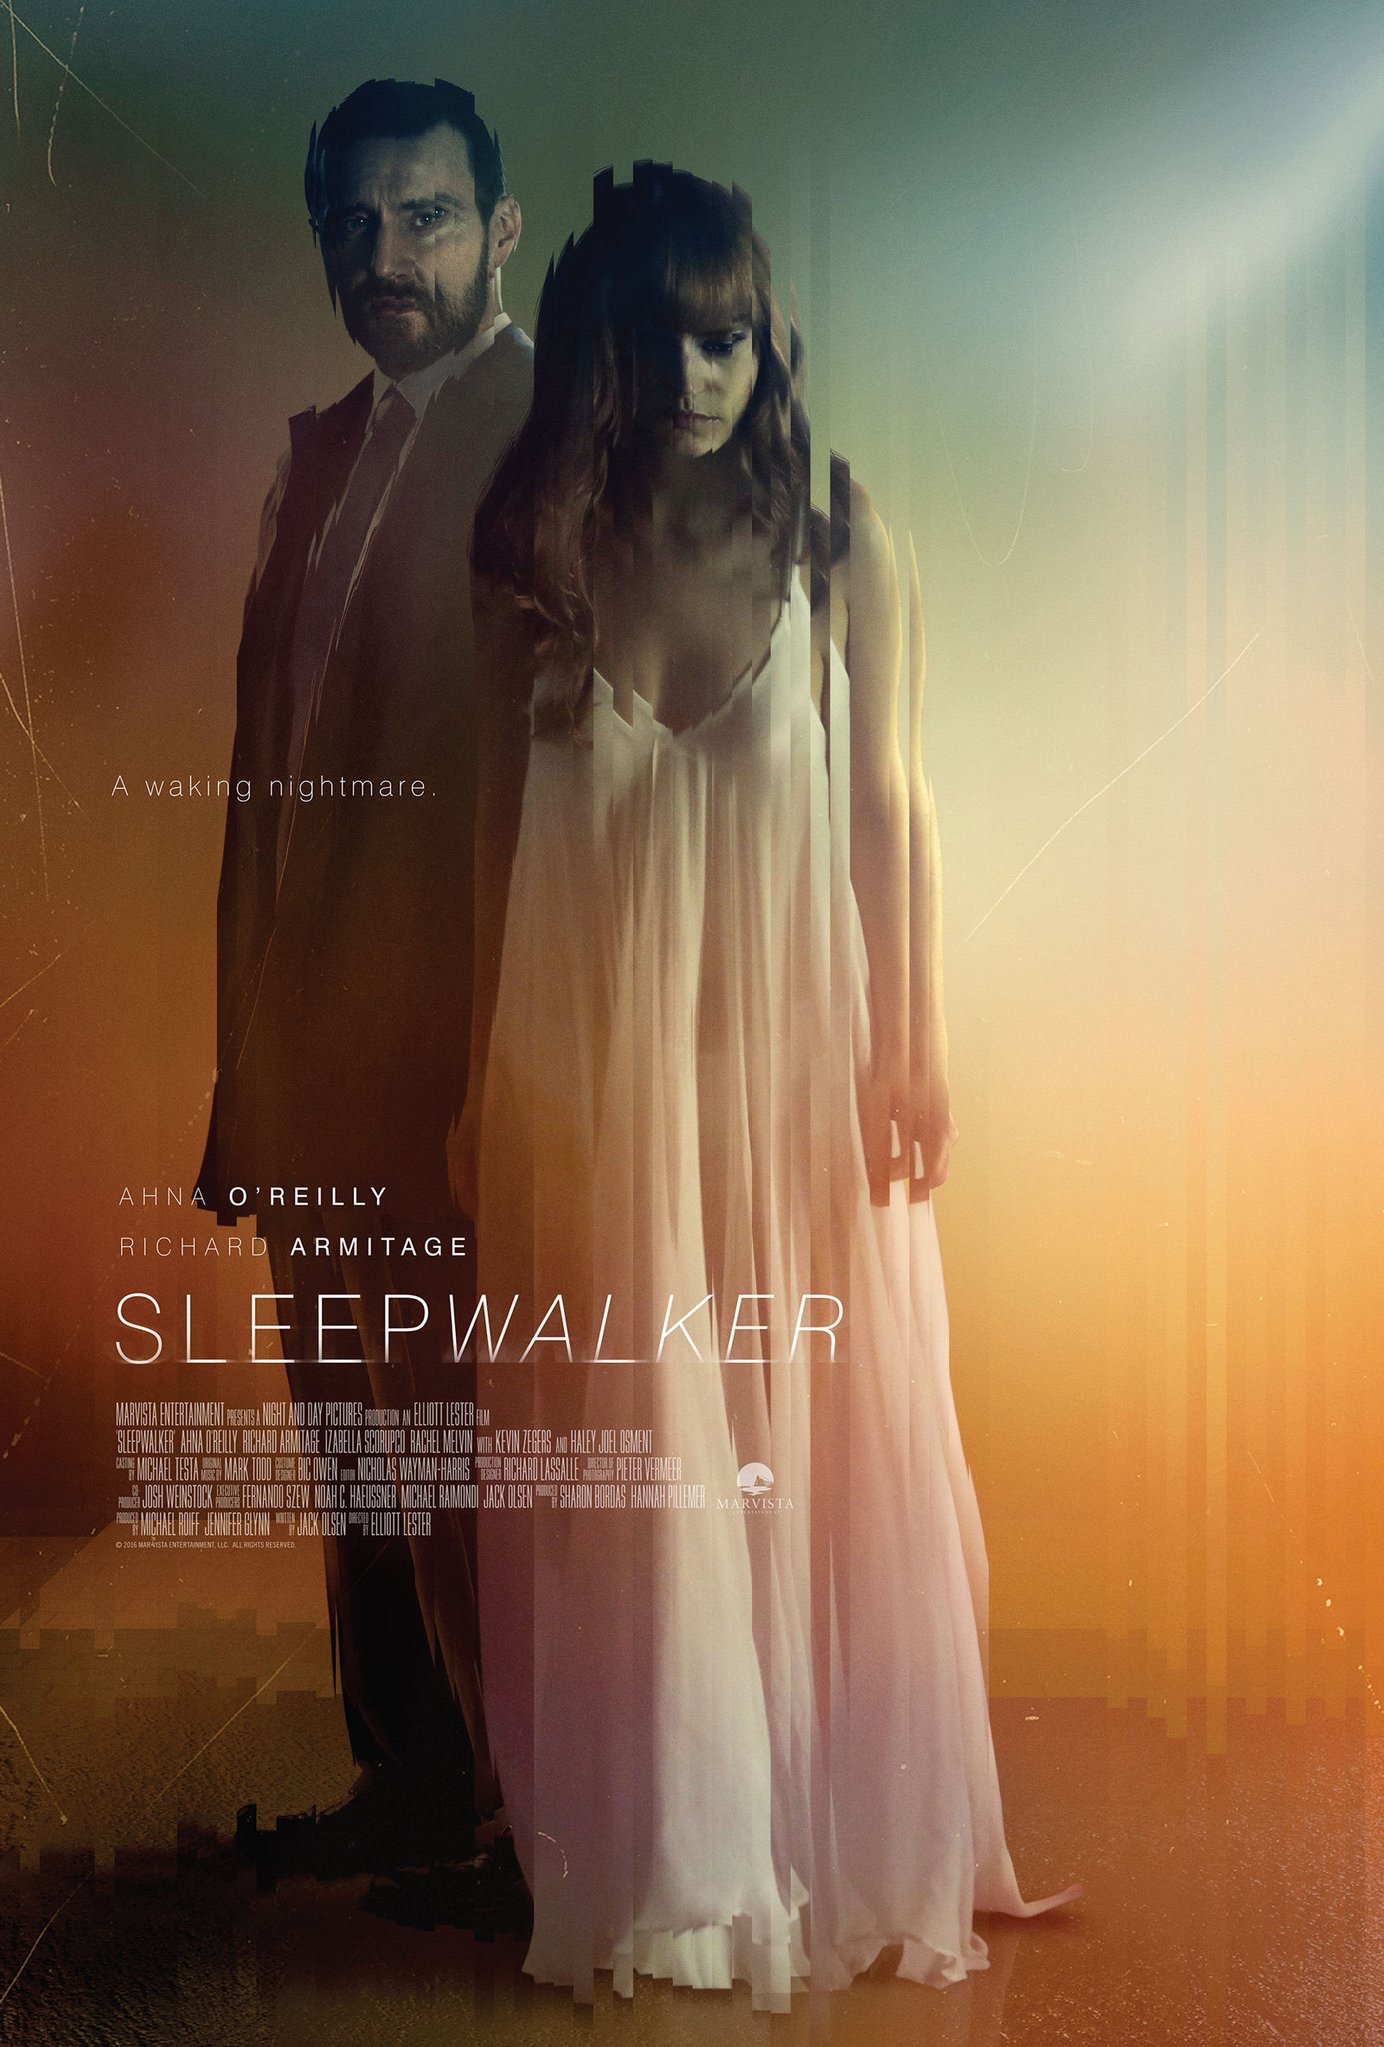 Sleepwalker (2017) Ahna O’Reilly